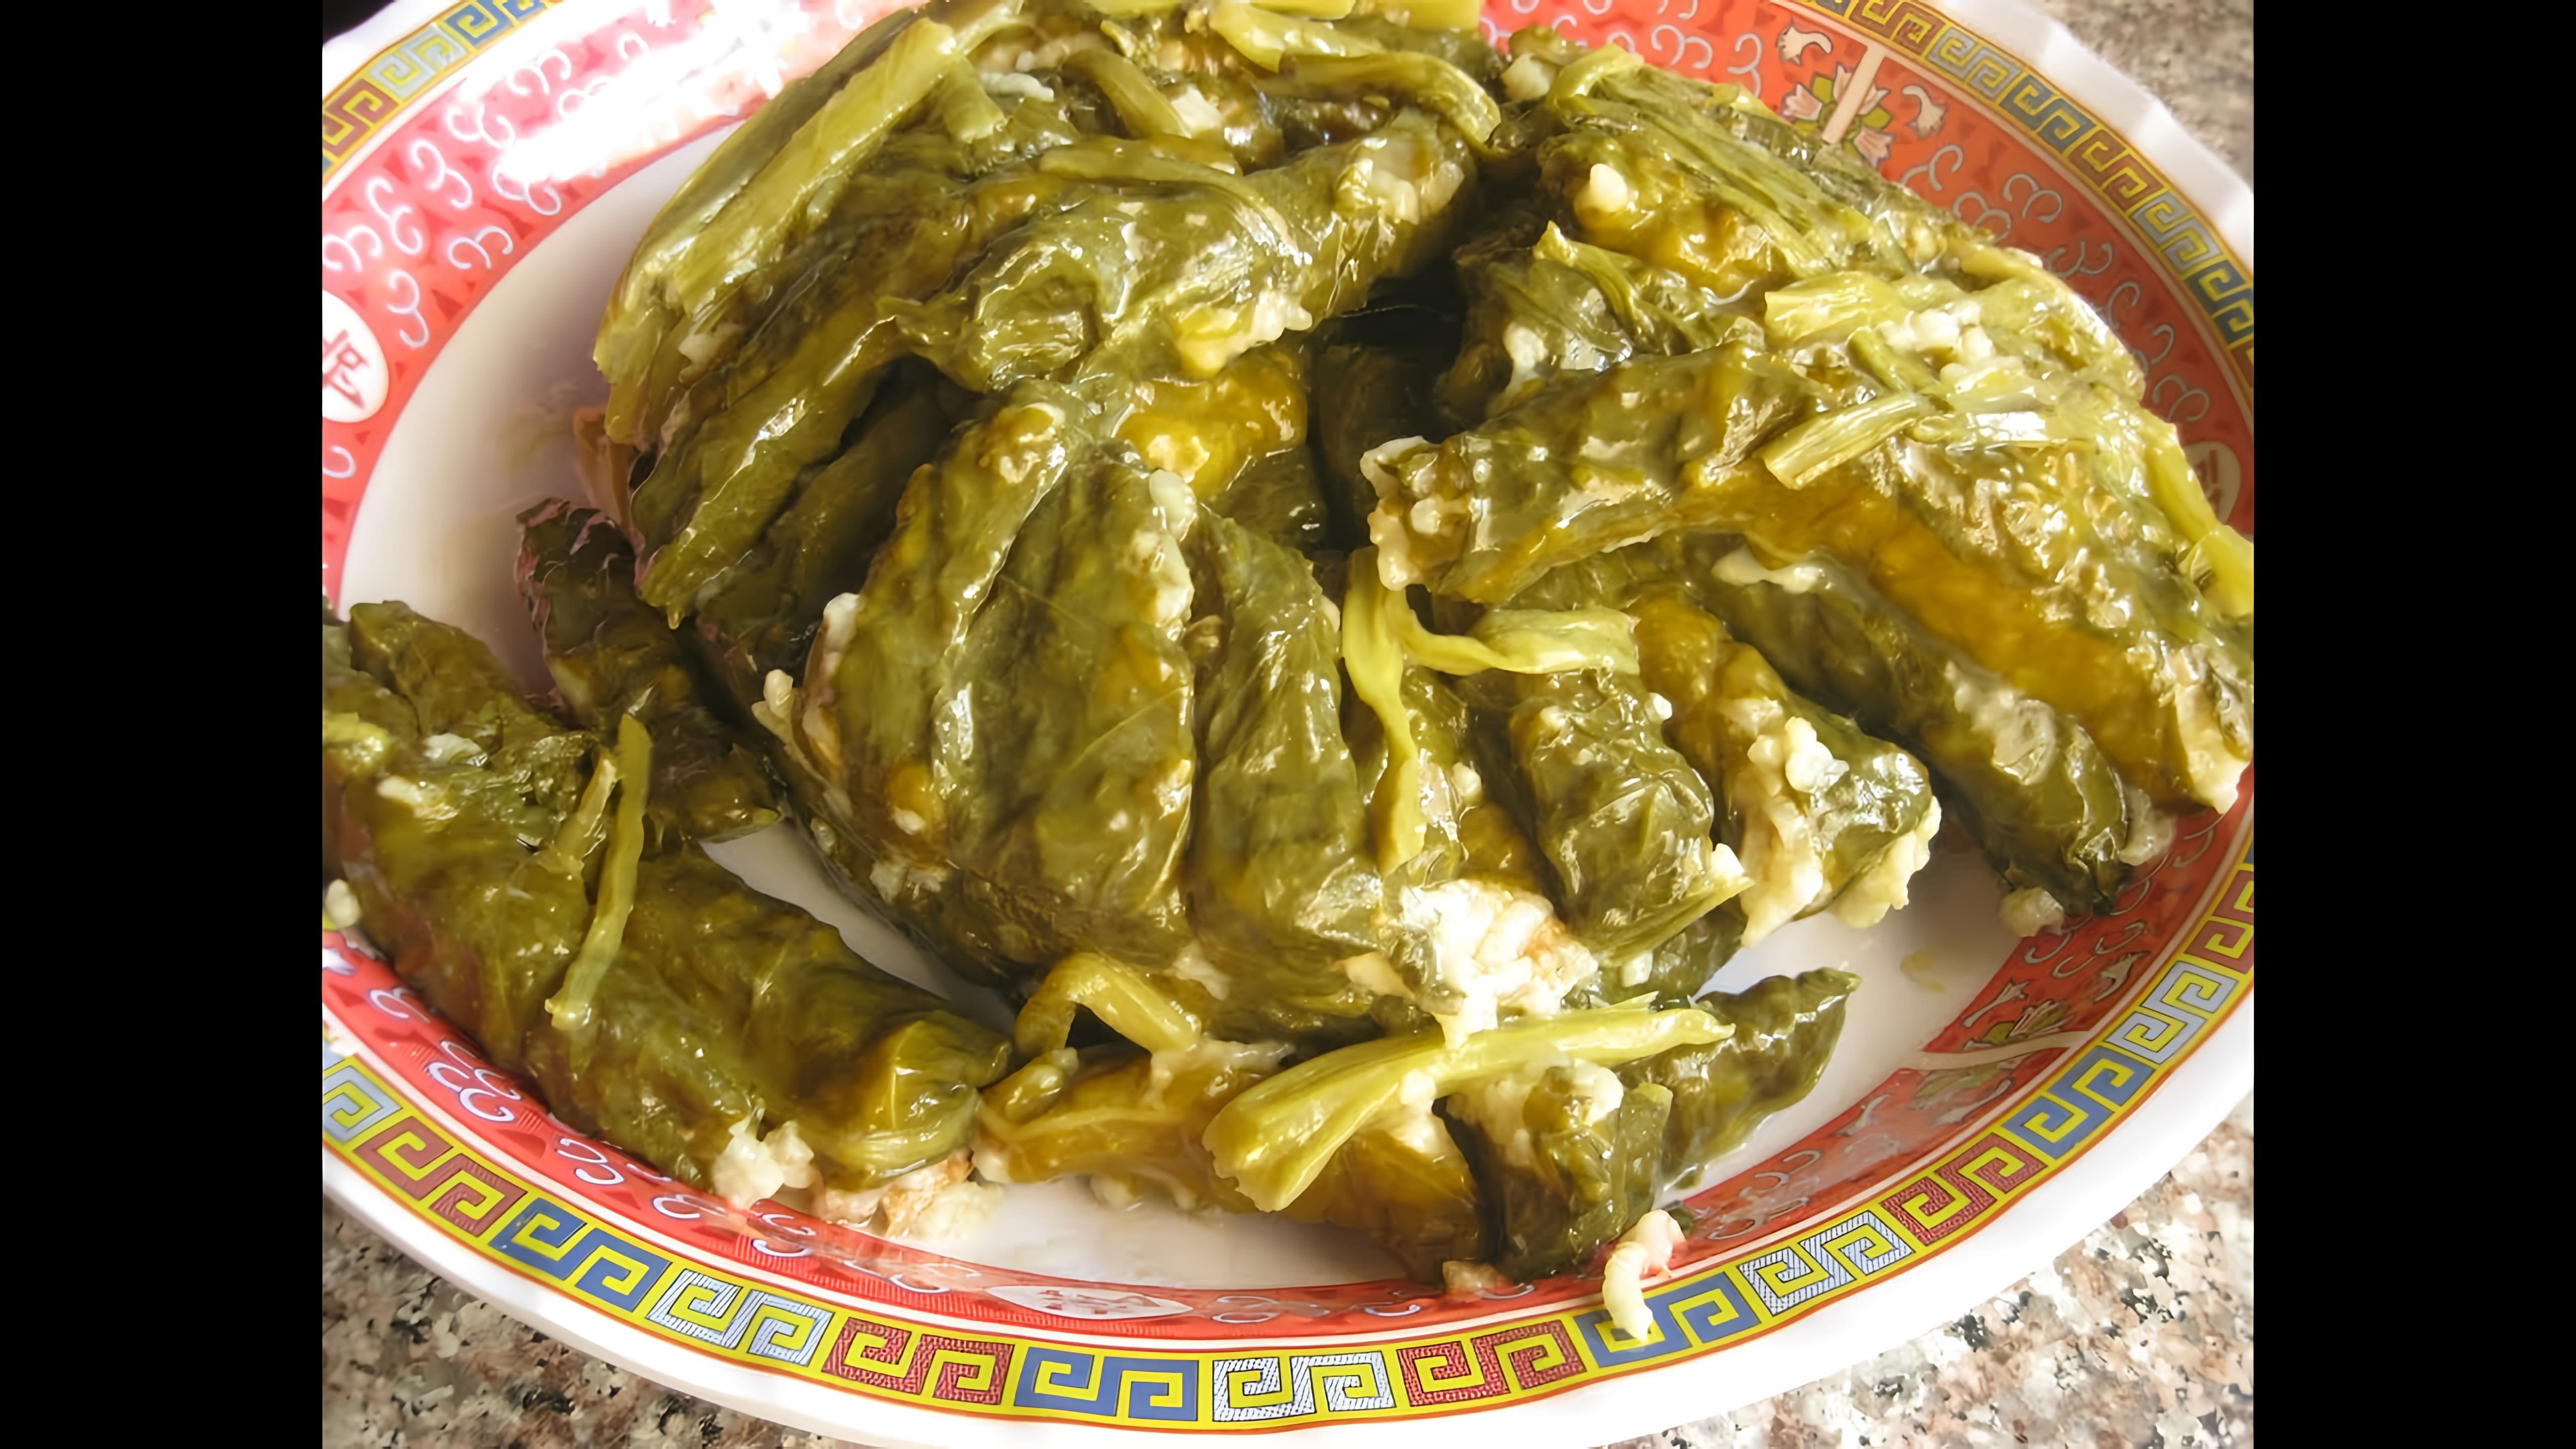 В данном видео демонстрируется процесс приготовления блюда арабской кухни - фаршированных листьев мангольда, или silik